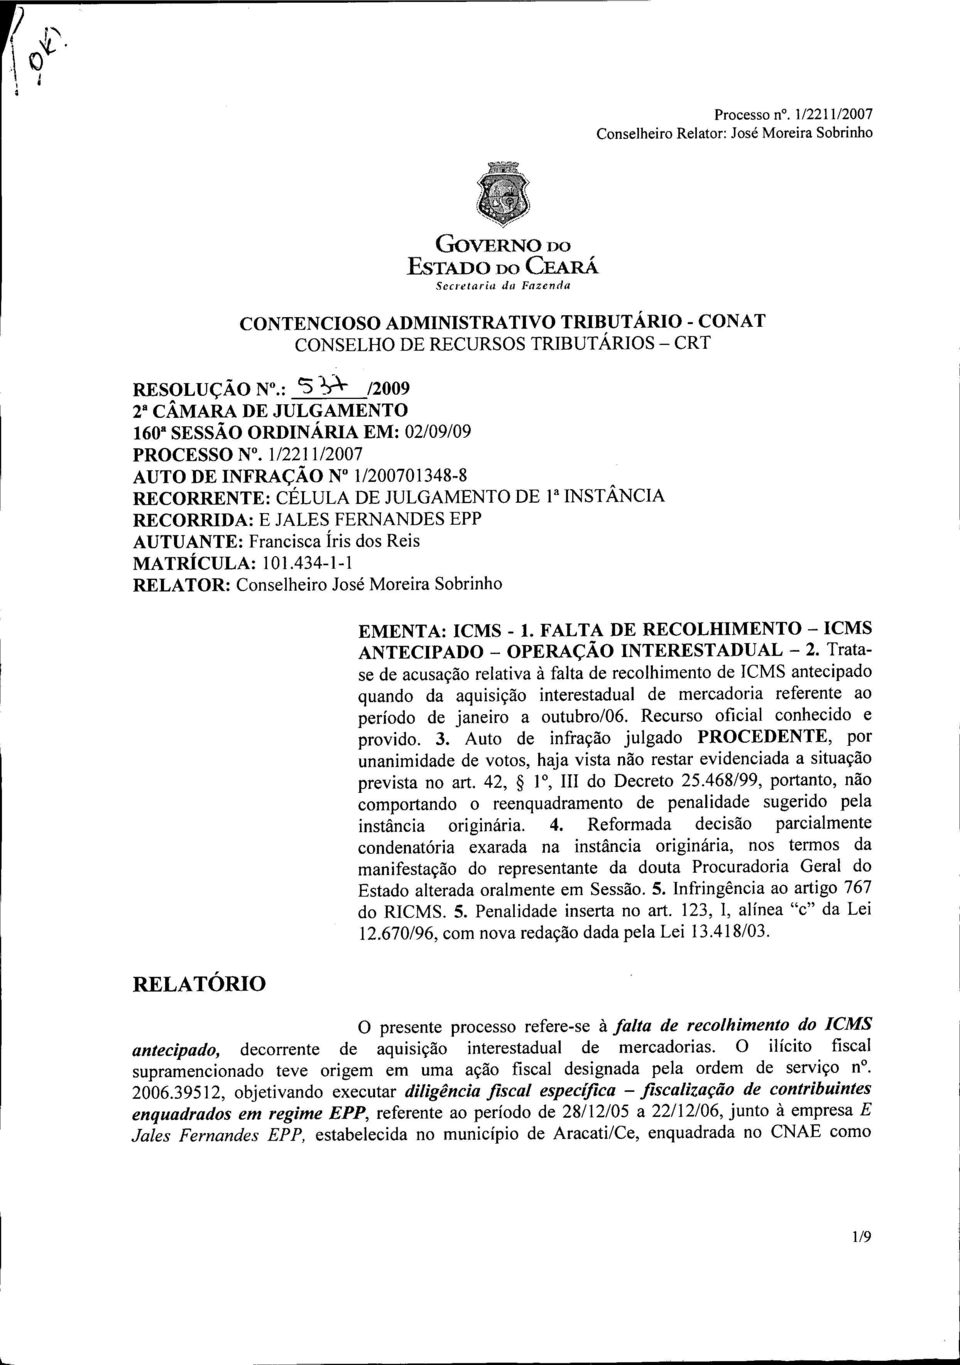 434-1-1 RELATOR: Conselheiro José Moreira Sobrinho EMENTA: ICMS -1. FALTA DE RECOLHIMENTO - ICMS ANTECIPADO - OPERAÇÃO INTERESTADUAL - 2.